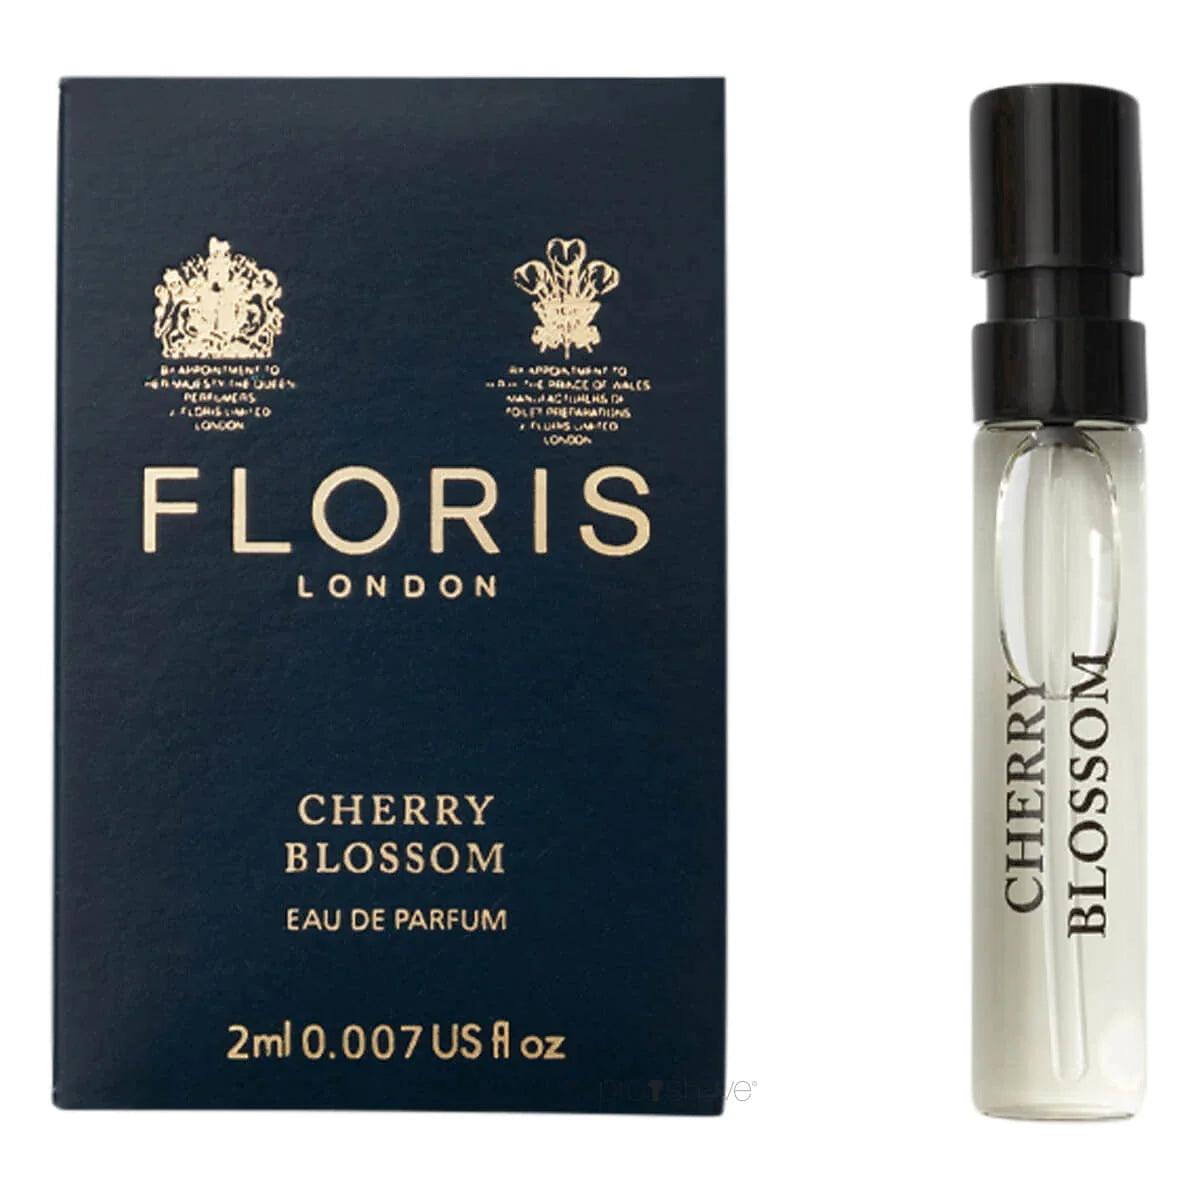 Floris Cherry Blossom, Eau de Parfum, 2 ml | Parfyme | Floris London | JK SHOP | JK Barber og herre frisør | Lavepriser | Best